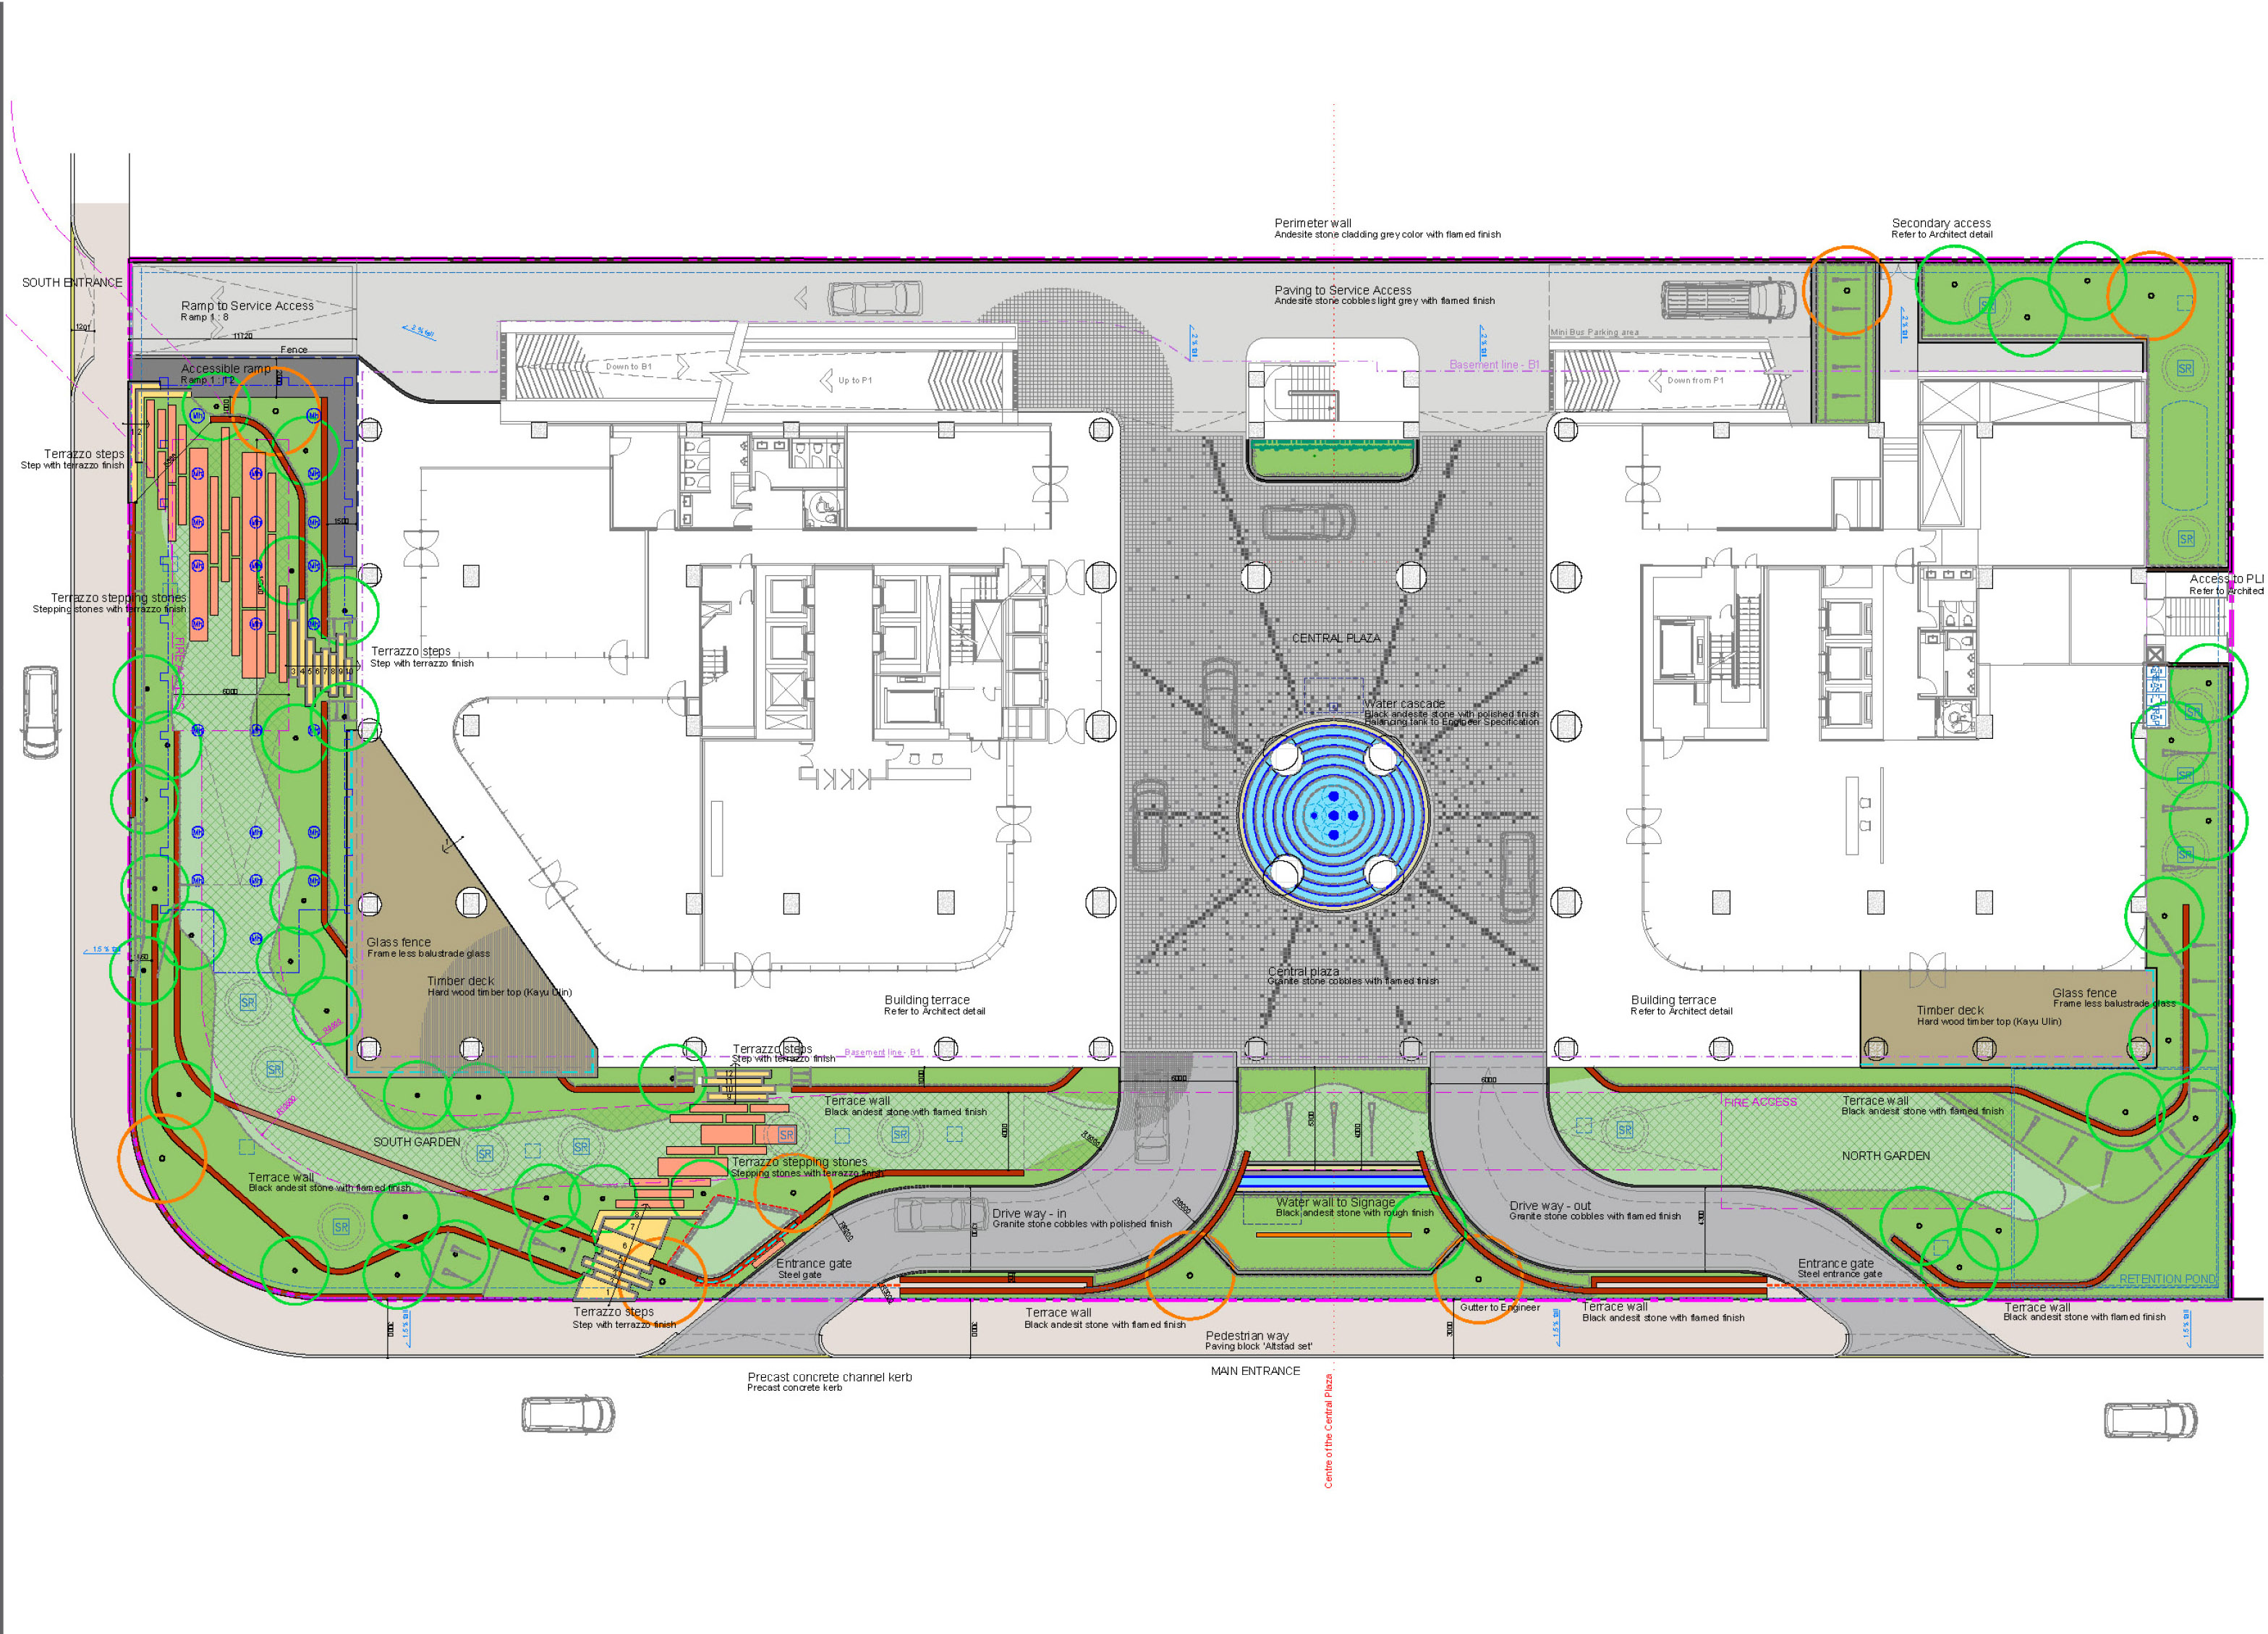 Ground floor - landscape plan